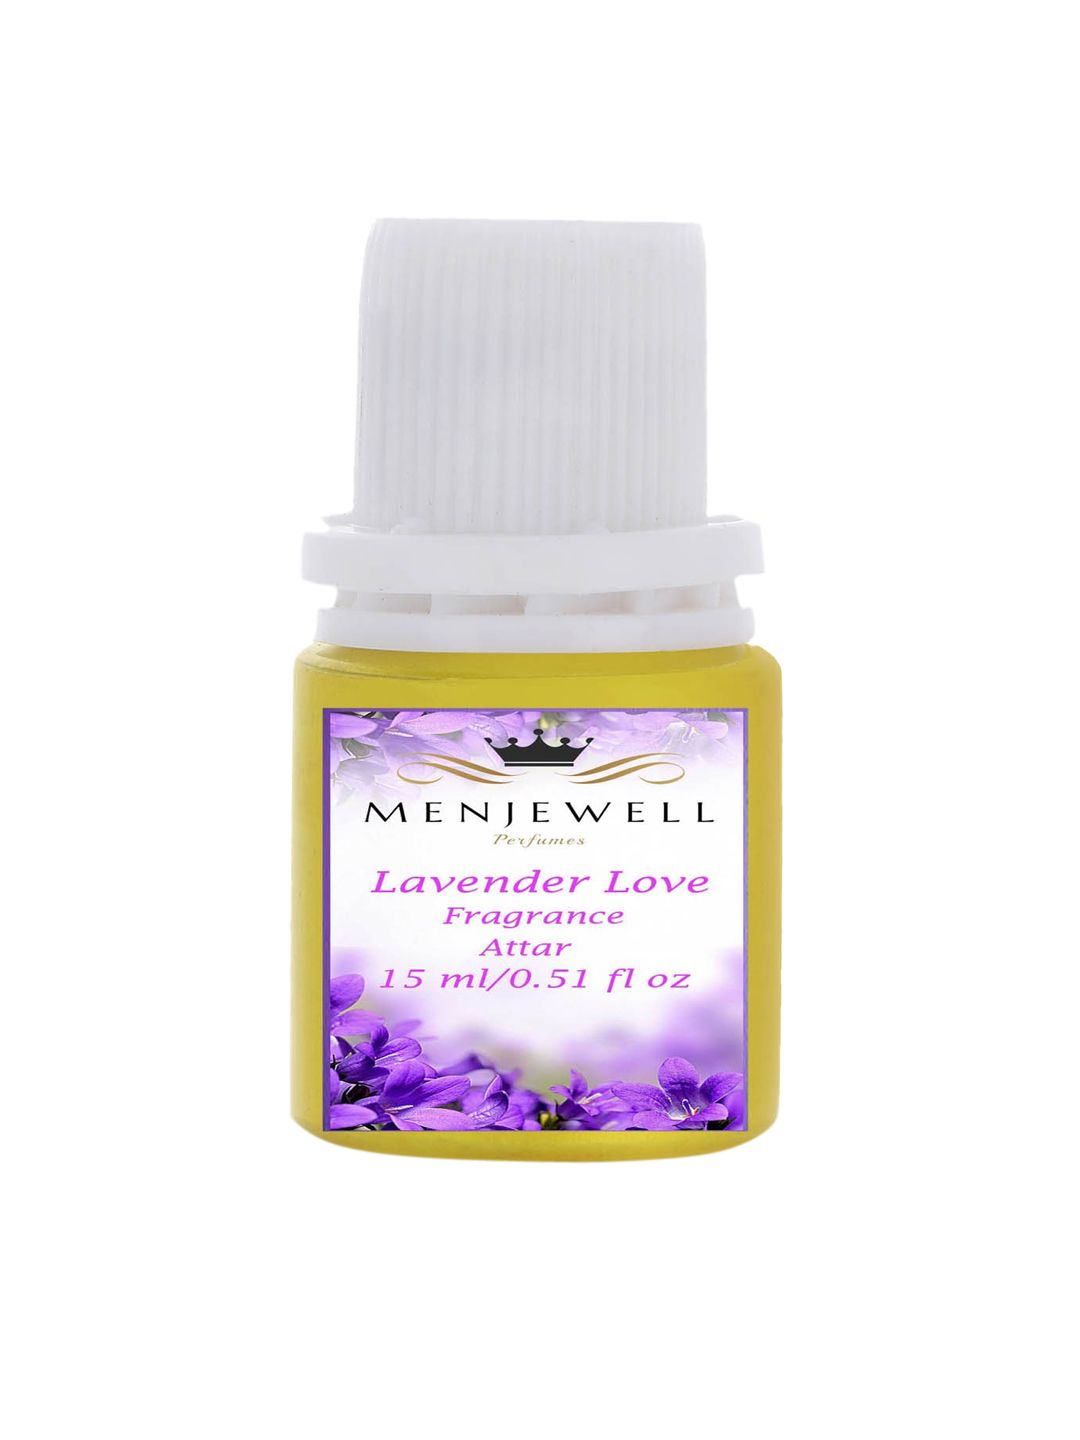 Menjewell Lavender Love Fragrance Long Lasting Attar - 15ml Price in India